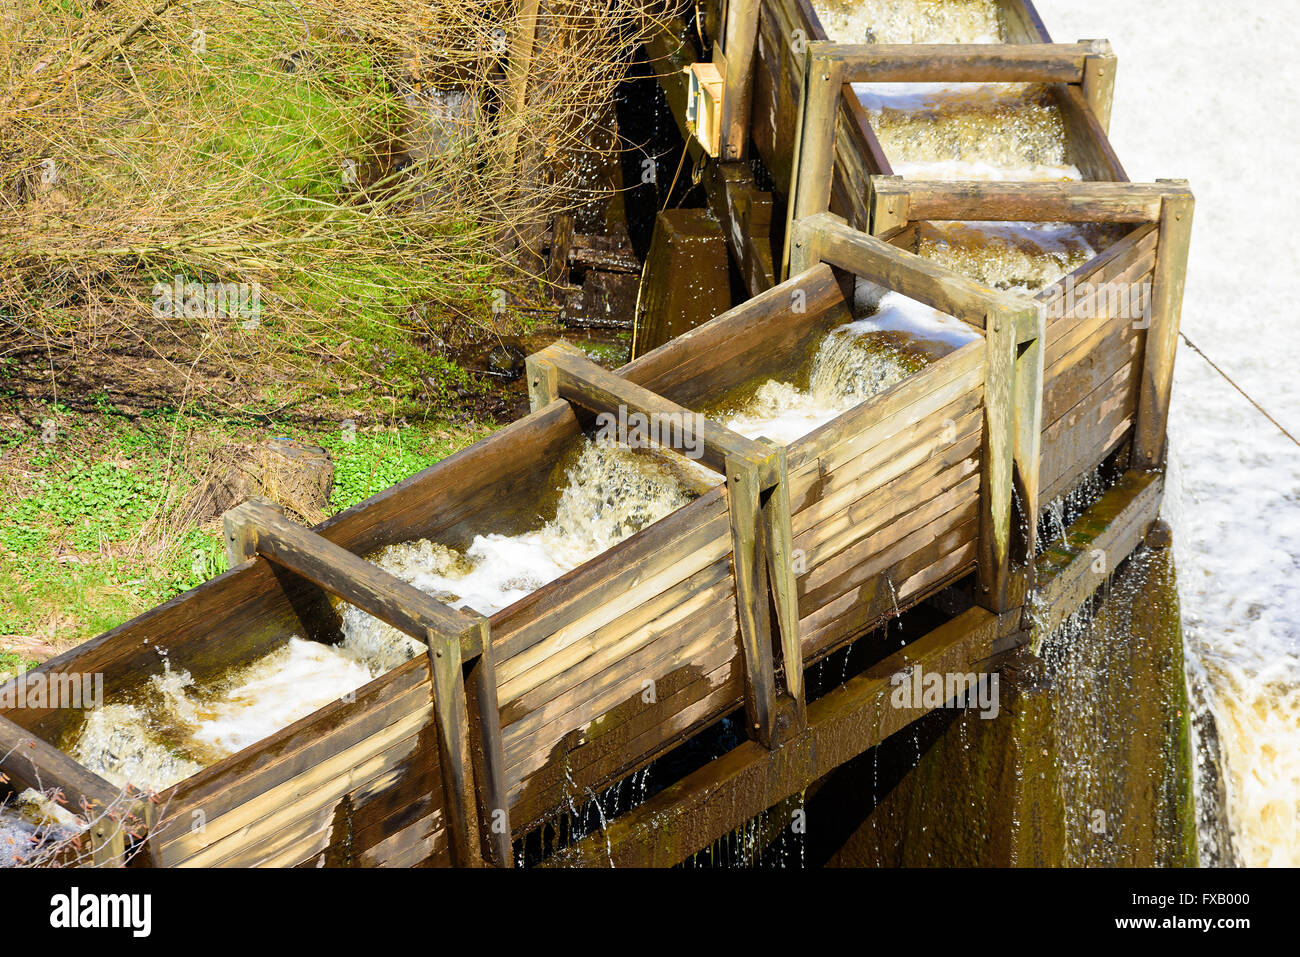 L'échelle à poissons en bois à l'eau à côté d'un débordement du réservoir. Cela permet de naviguer dans les poissons migrateurs dans les principaux obstacles w Banque D'Images